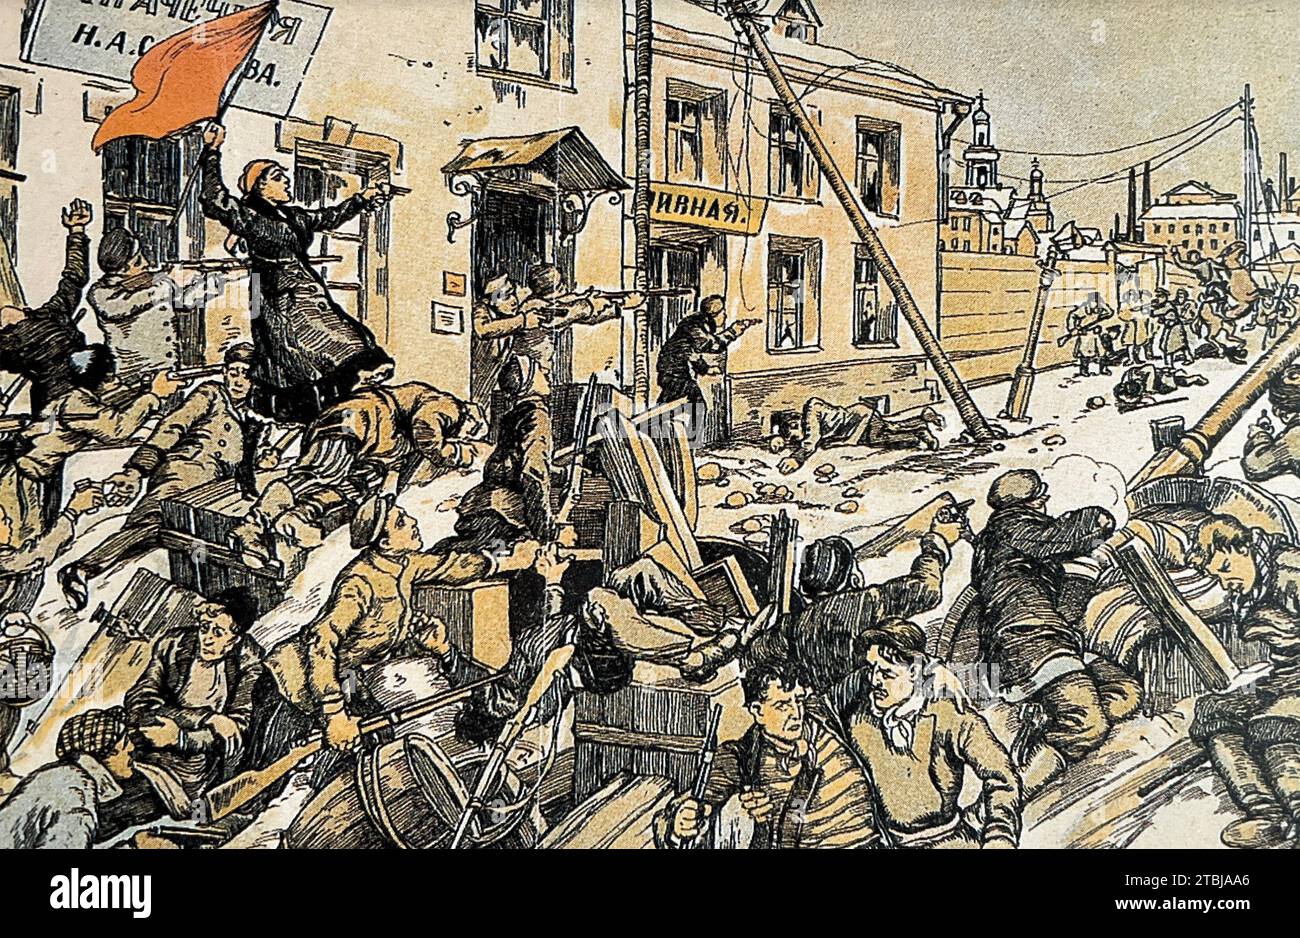 RÉVOLUTION RUSSE 1905 dans une illustration de propagande de 1918 par A.Bient Banque D'Images